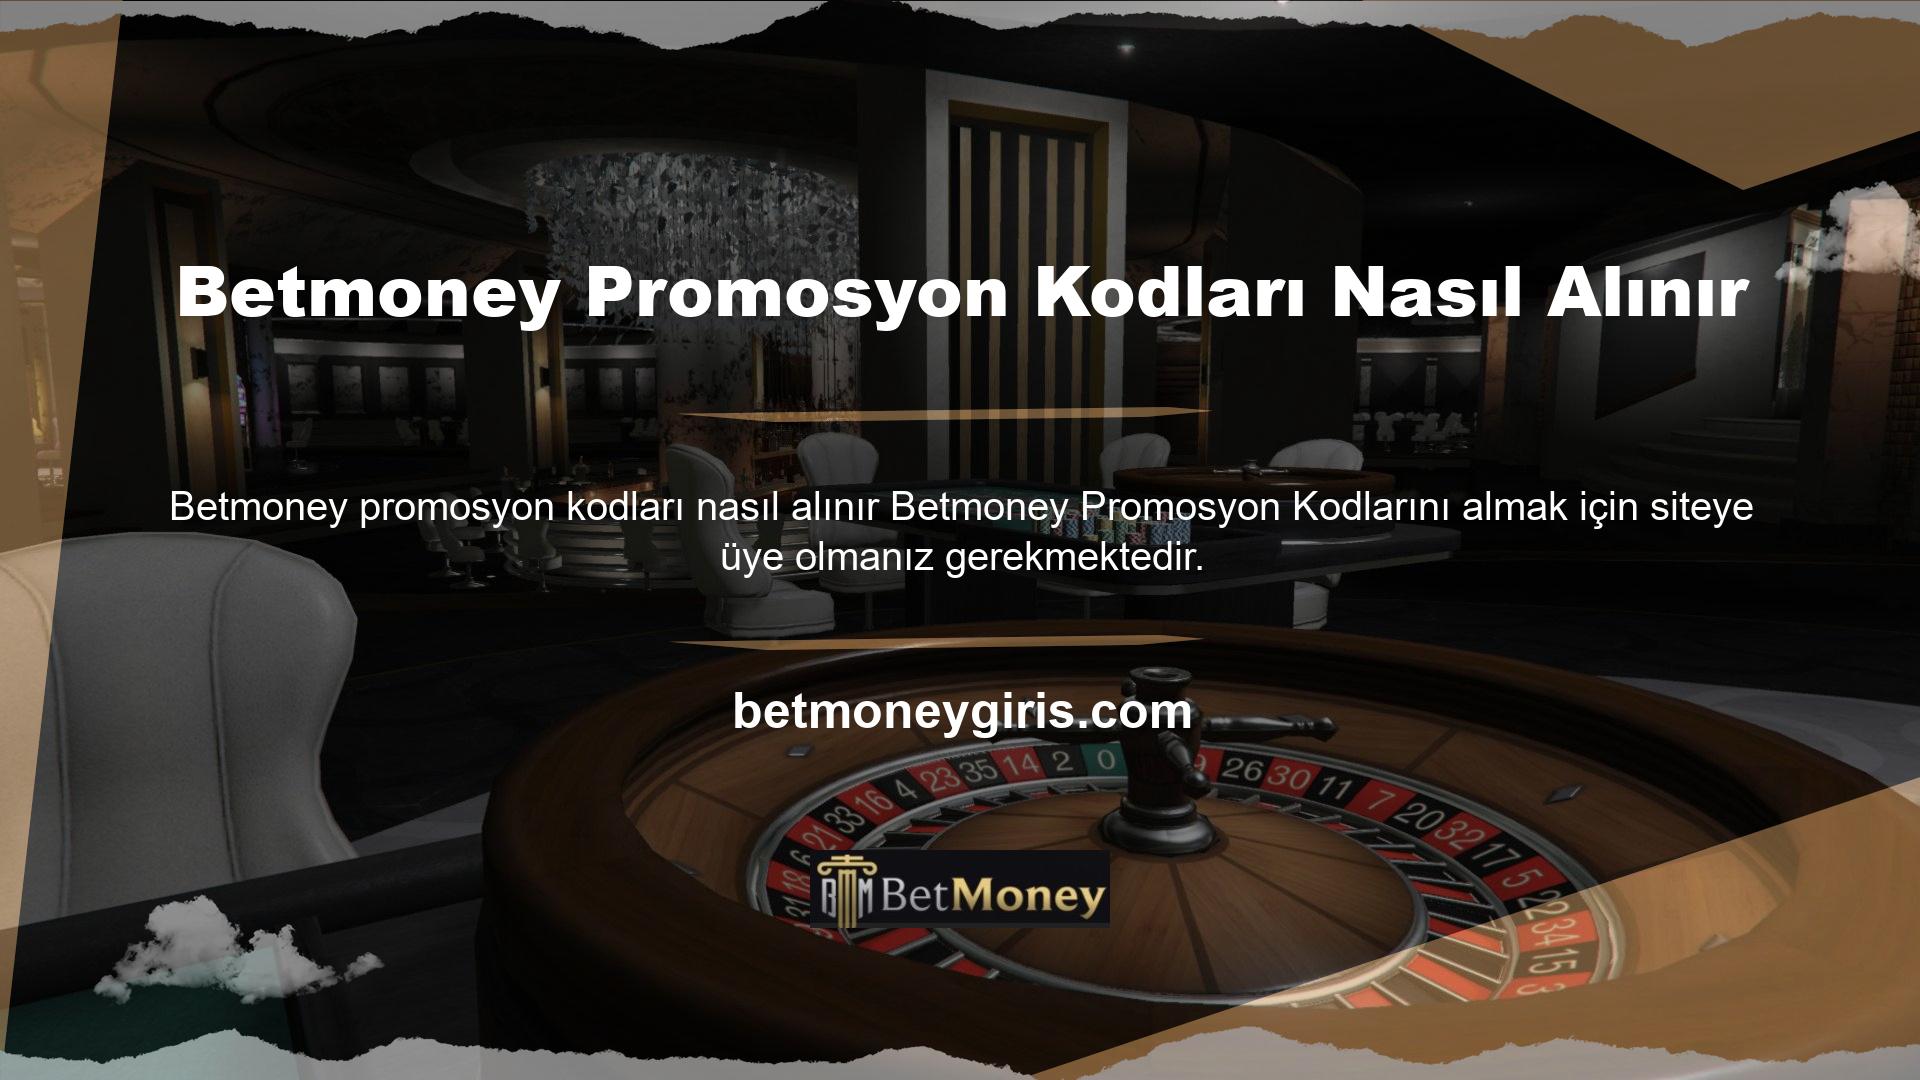 Bugünlerde "İşlemler" bölümünde kullanıcılara özel tasarlanmış Betmoney Kupon Kodu Mağazası bulunmaktadır